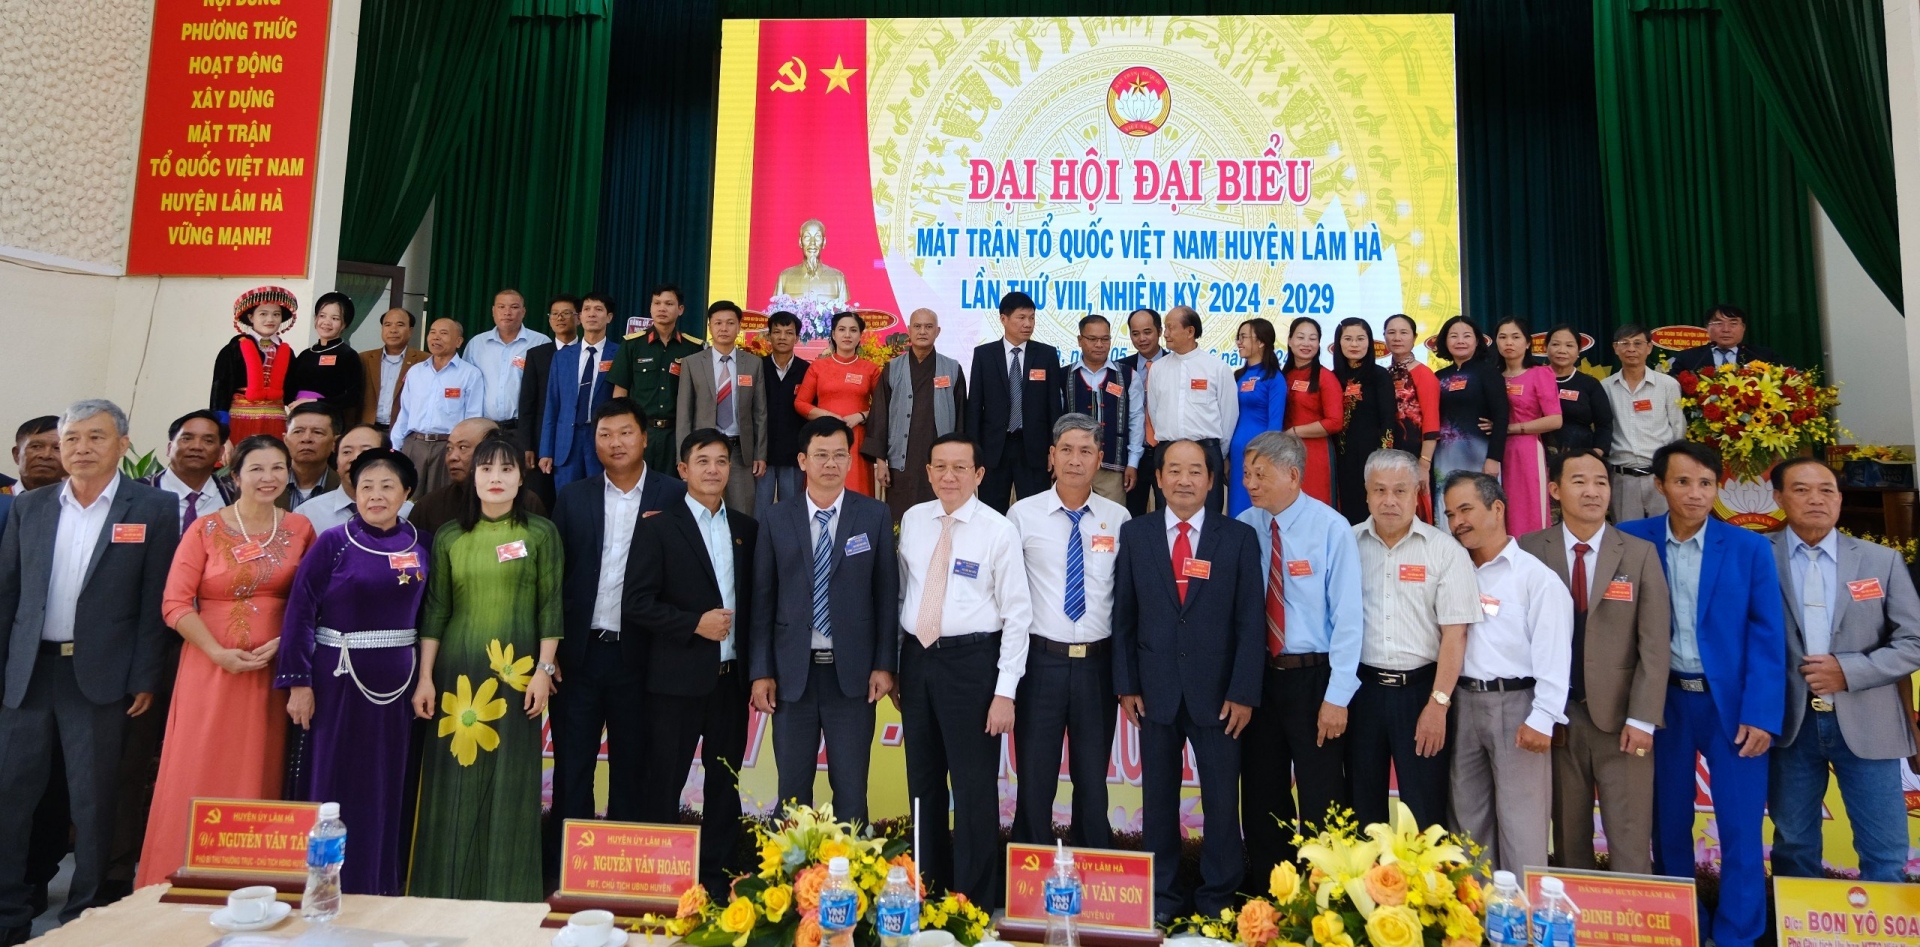 Các ủy viên Ủy ban MTTQ Việt Nam huyện khóa VIII và đại biểu đi dự Đại hội đại biểu MTTQ Việt Nam tỉnh Lâm Đồng nhiệm kỳ 2024 - 2029 ra mắt Đại hội